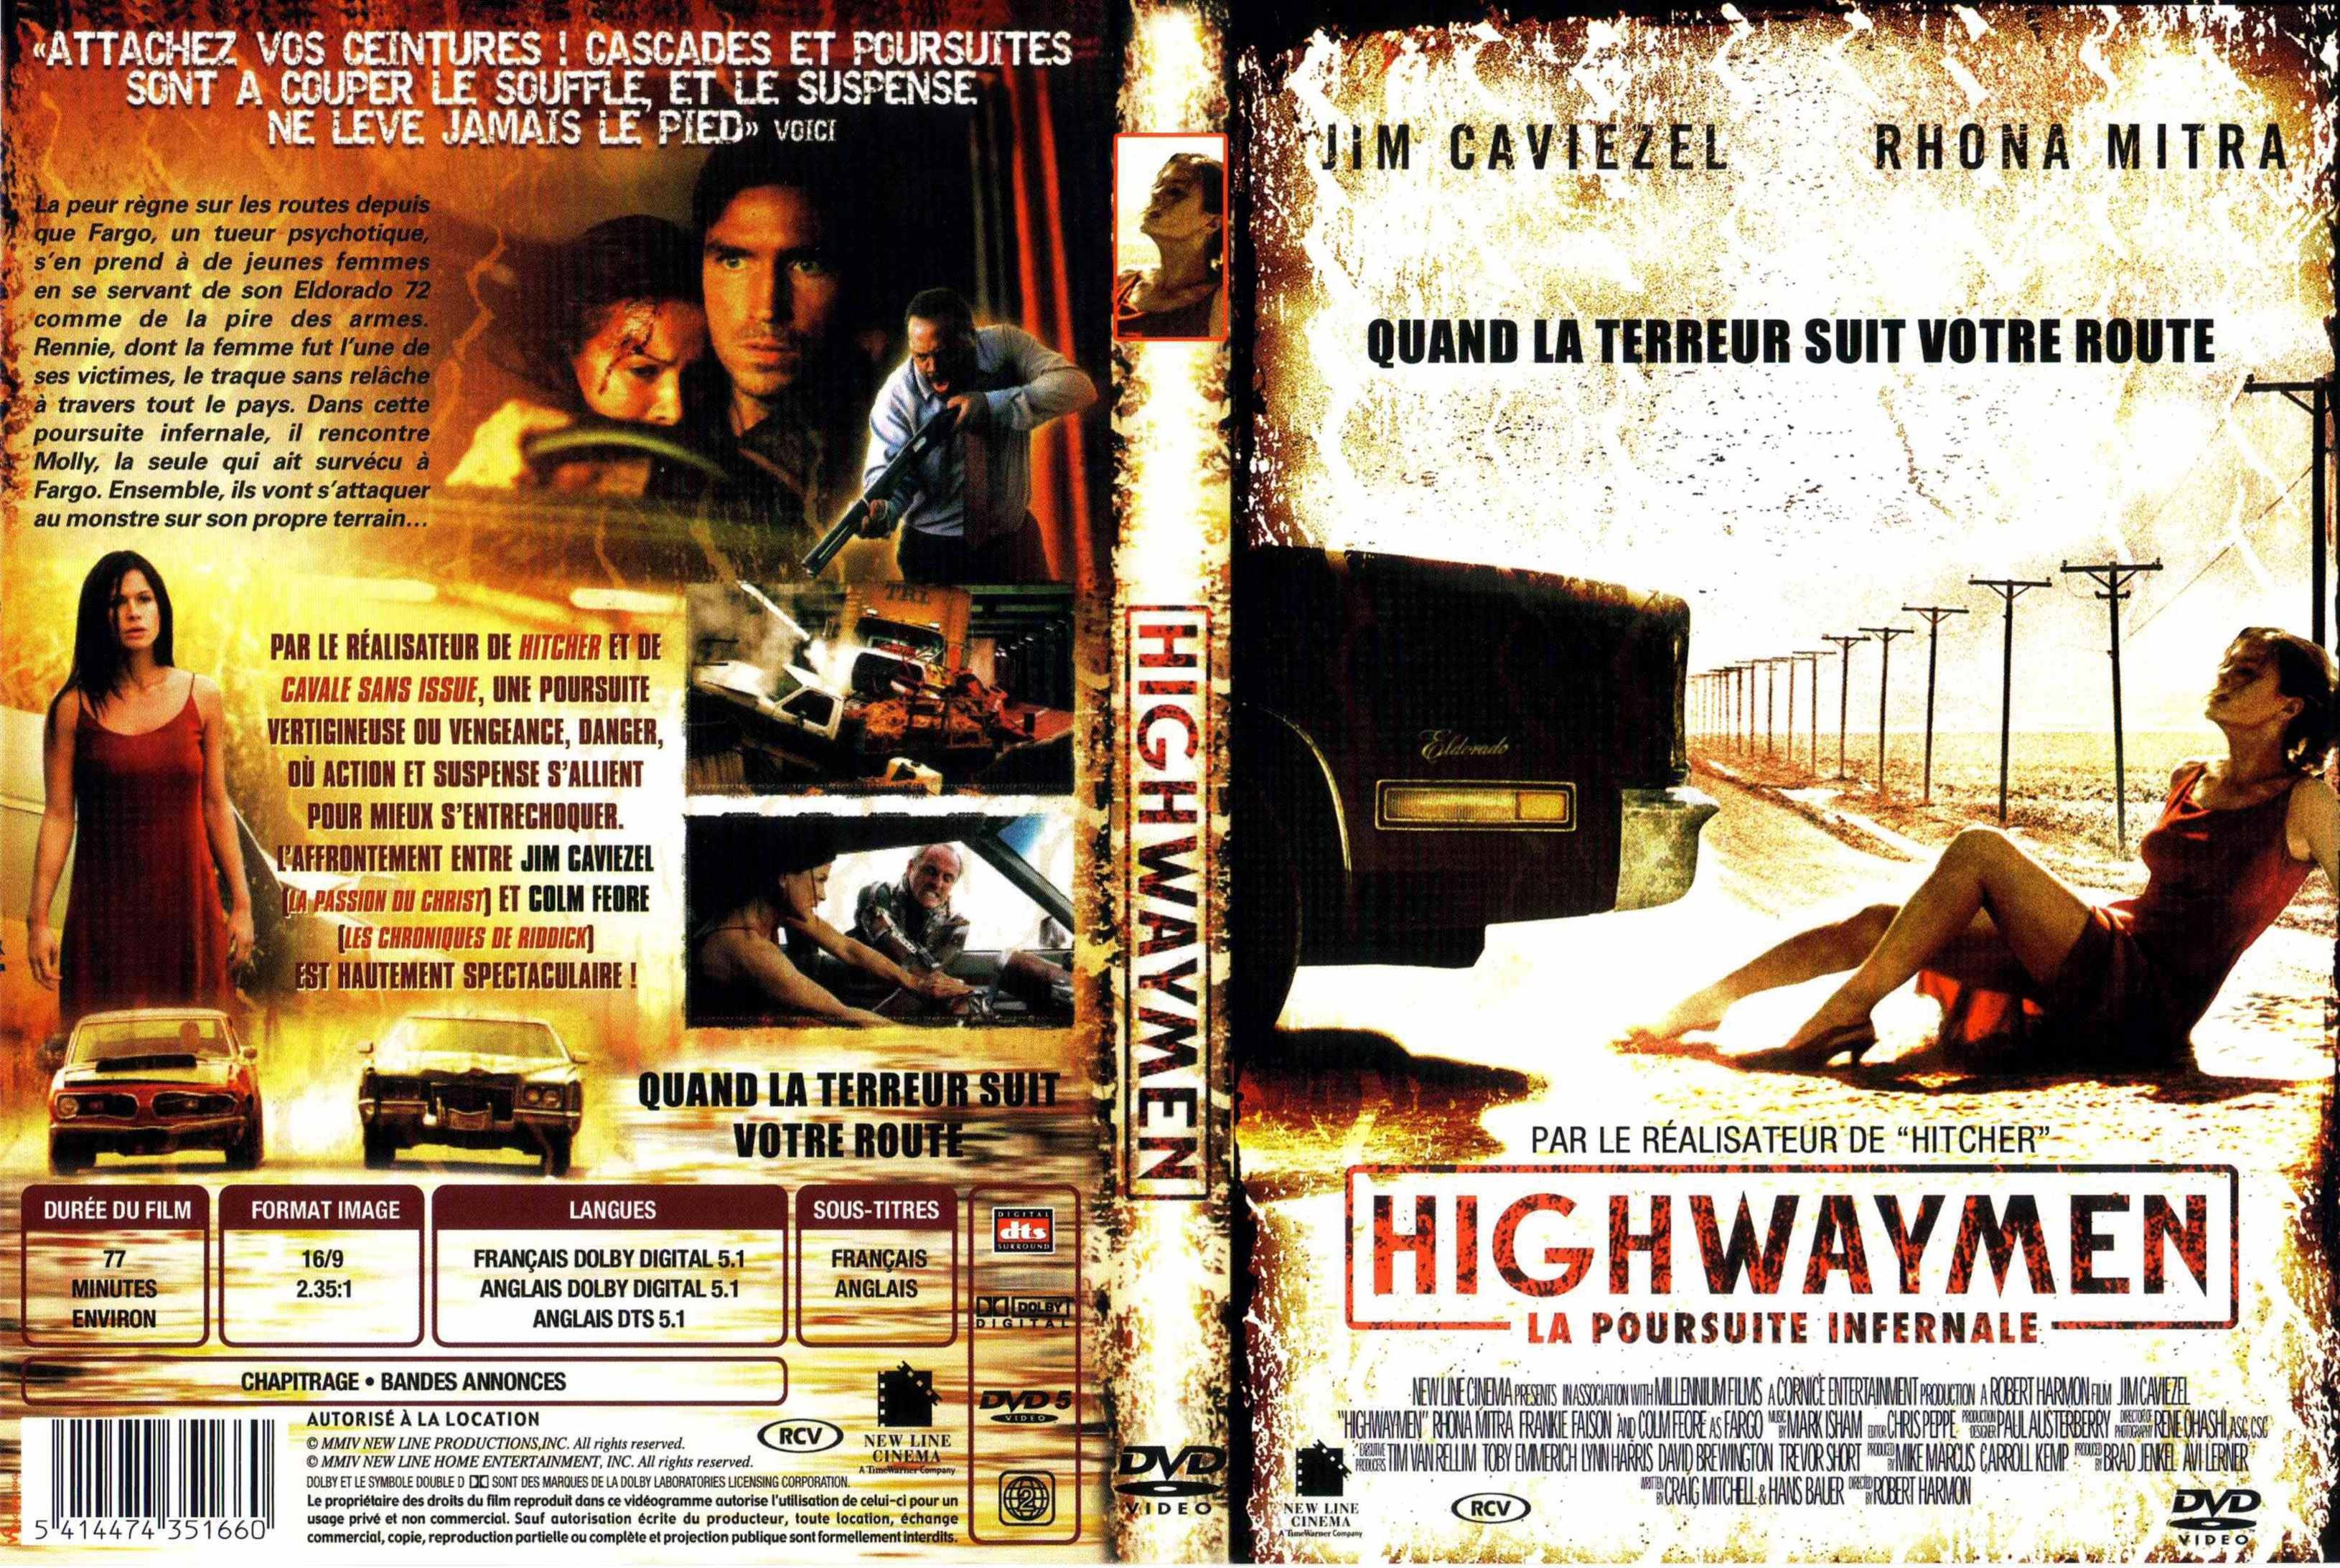 Jaquette DVD Highwaymen